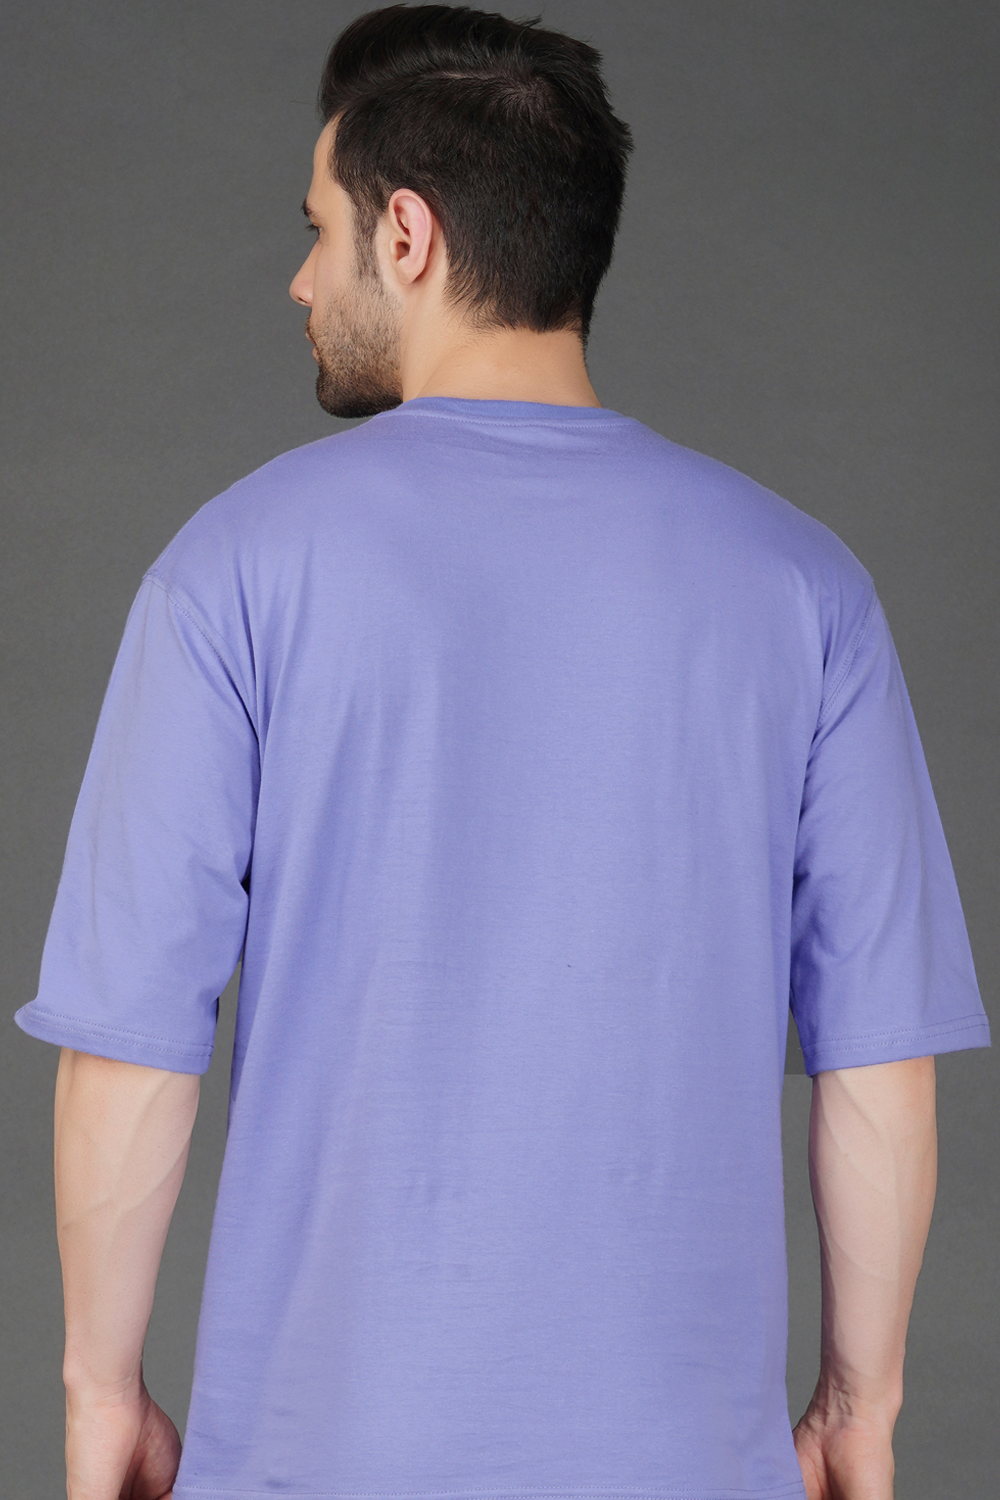 Aisthetikos Mens Oversized Tshirt (Pista)